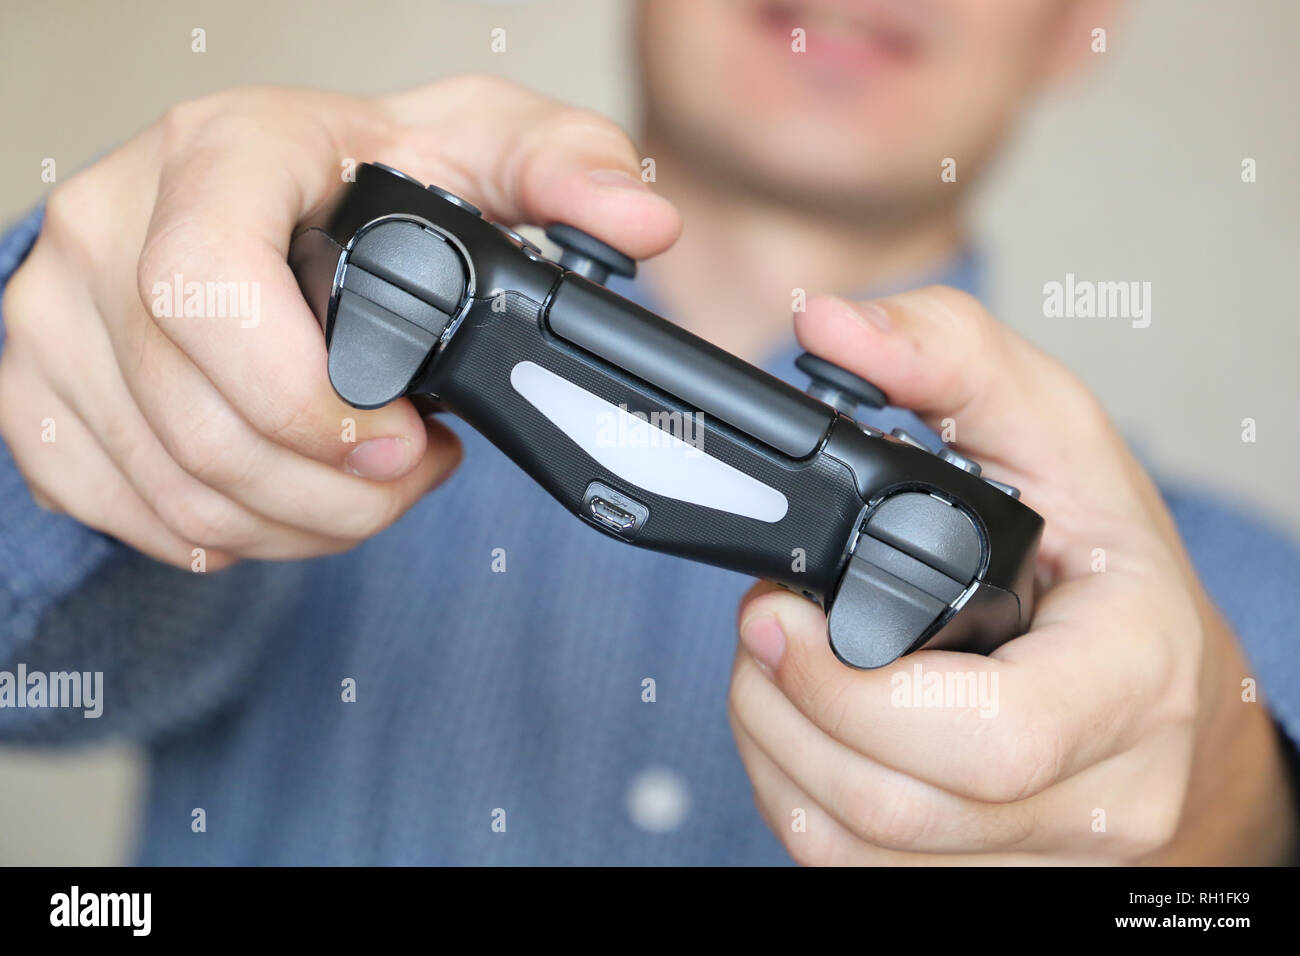 Joystick en manos masculinas de cerca, jugador jugando juegos de video con el gamepad. La adicción a los juegos, el concepto de ocio doméstico Foto de stock